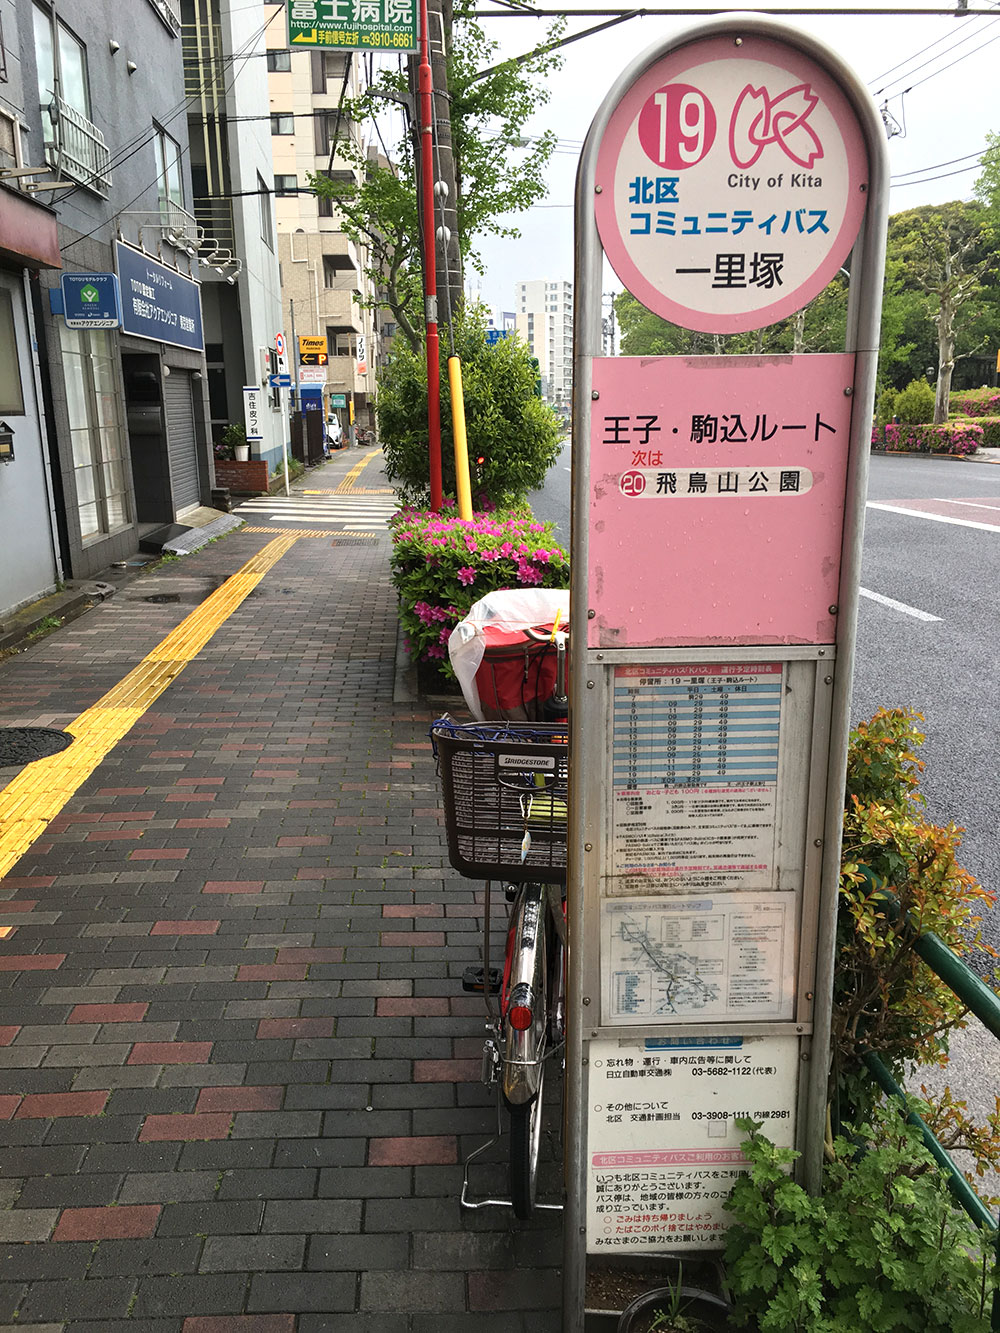 【19】一里塚にて、下車徒歩3分